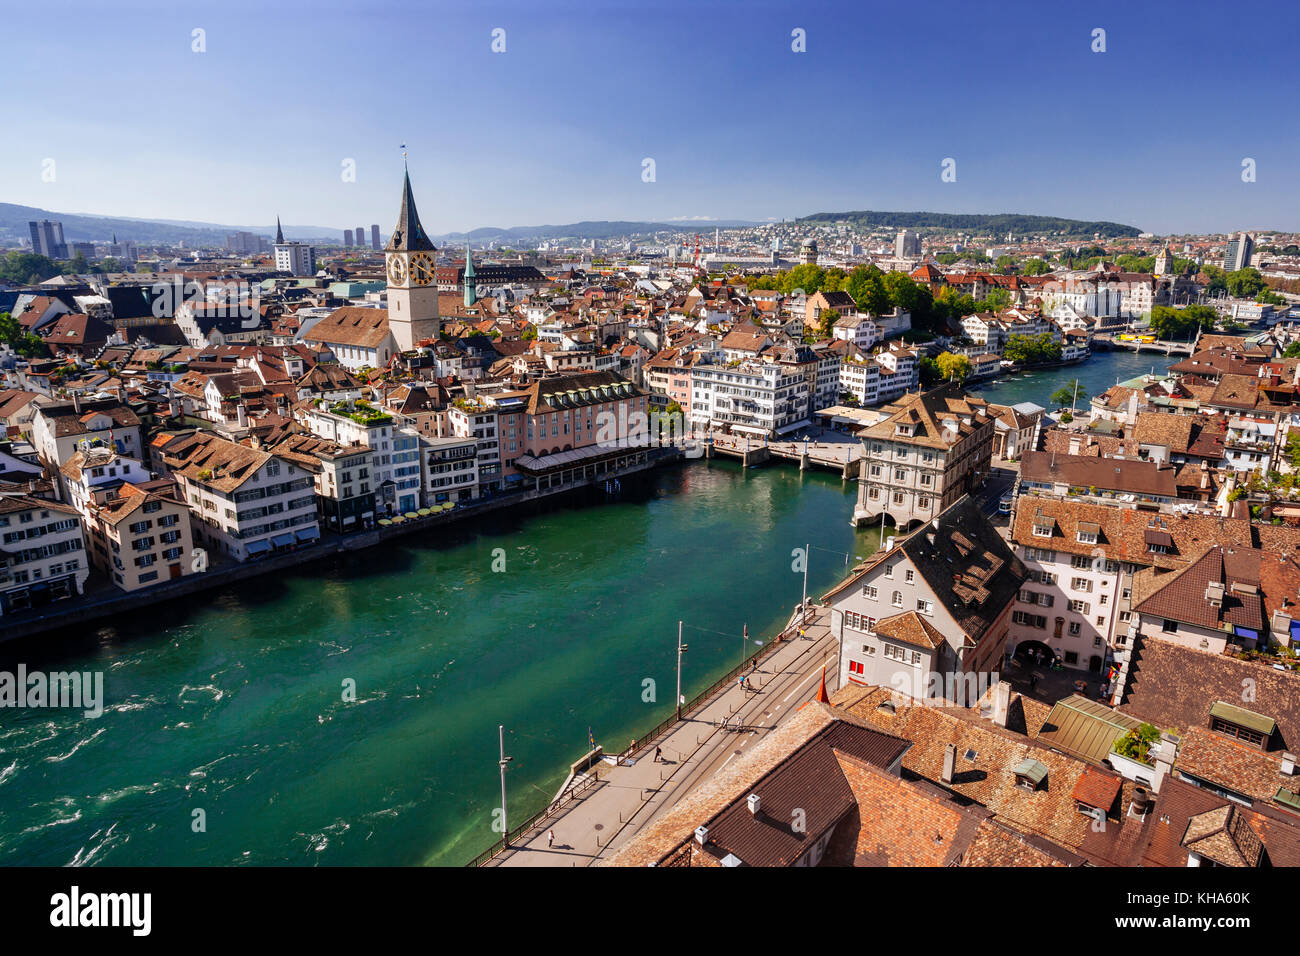 Photo de la ville de Zurich, Suisse. Prises d'un tour de l'église surplombant la rivière Limmat. Banque D'Images